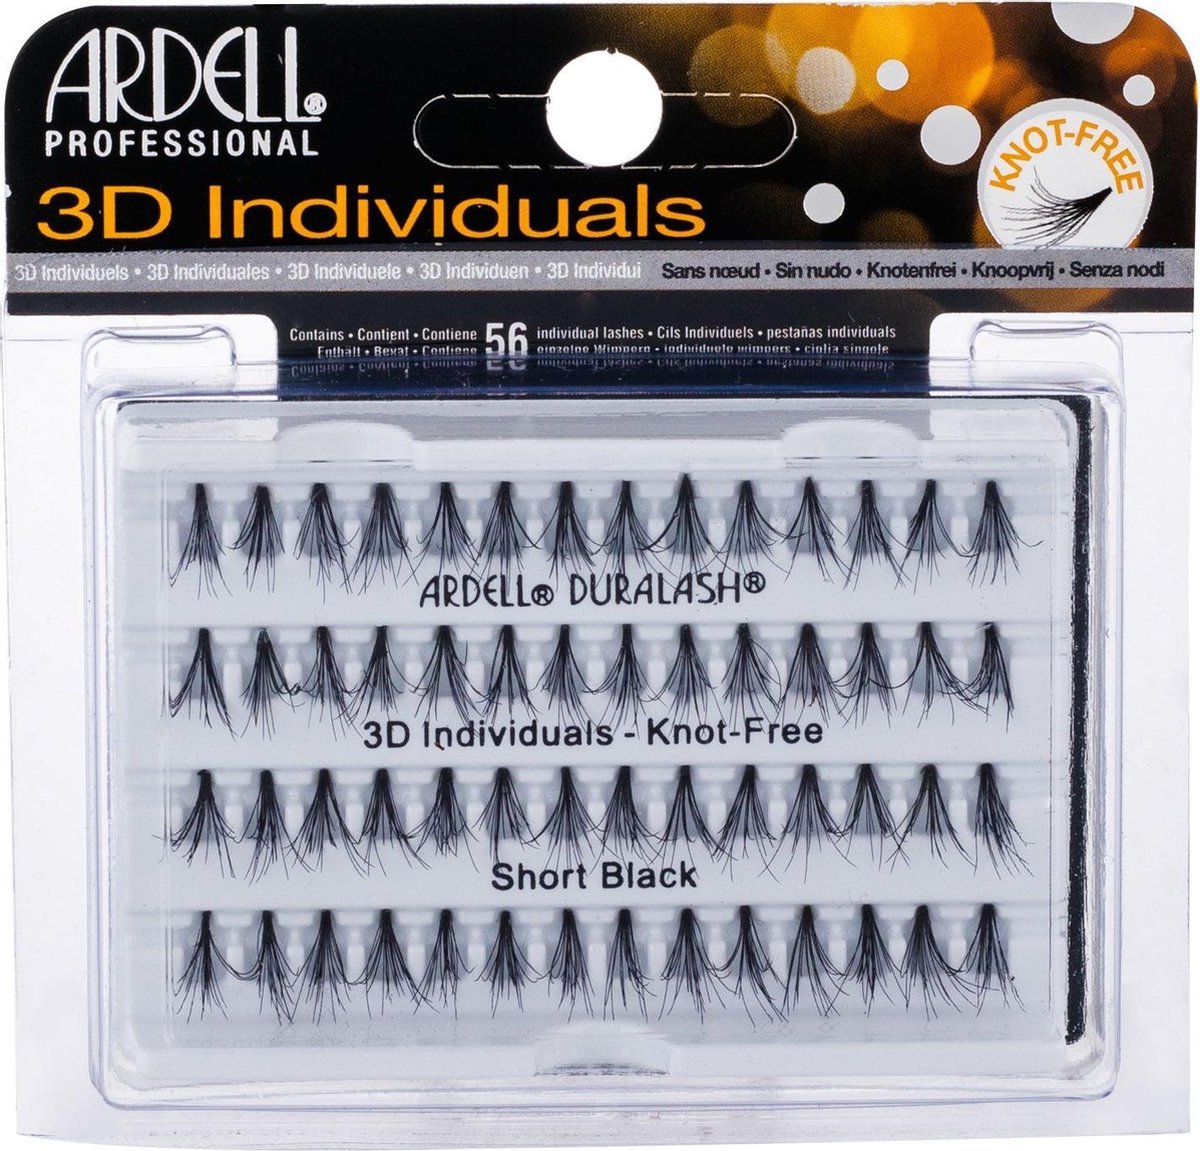 Ardell - 3D Individuals Duralash Knot-Free - Umělé řasy Short Black - 56.0ks